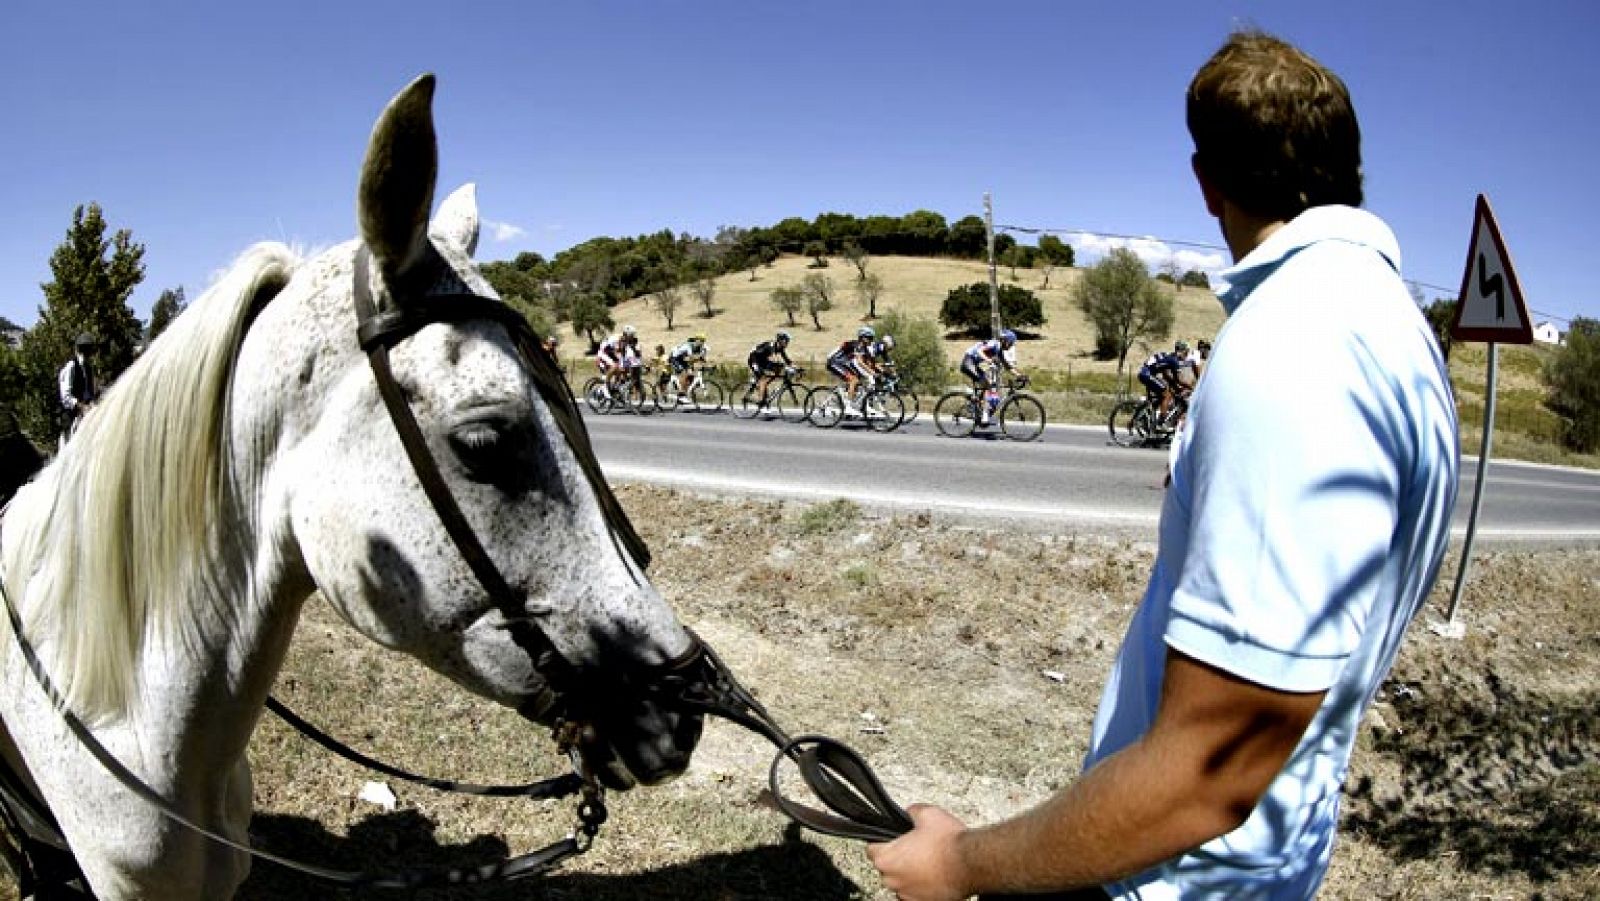 La ciudad de Jerez de la Frontera (Cádiz) lanzará la 69 edición de la Vuelta a España, según se desprende de las palabras del director de la carrera, Javier Guillén antes del inicio de la vigésima primera y última etapa, que conducirá al pelotón desd